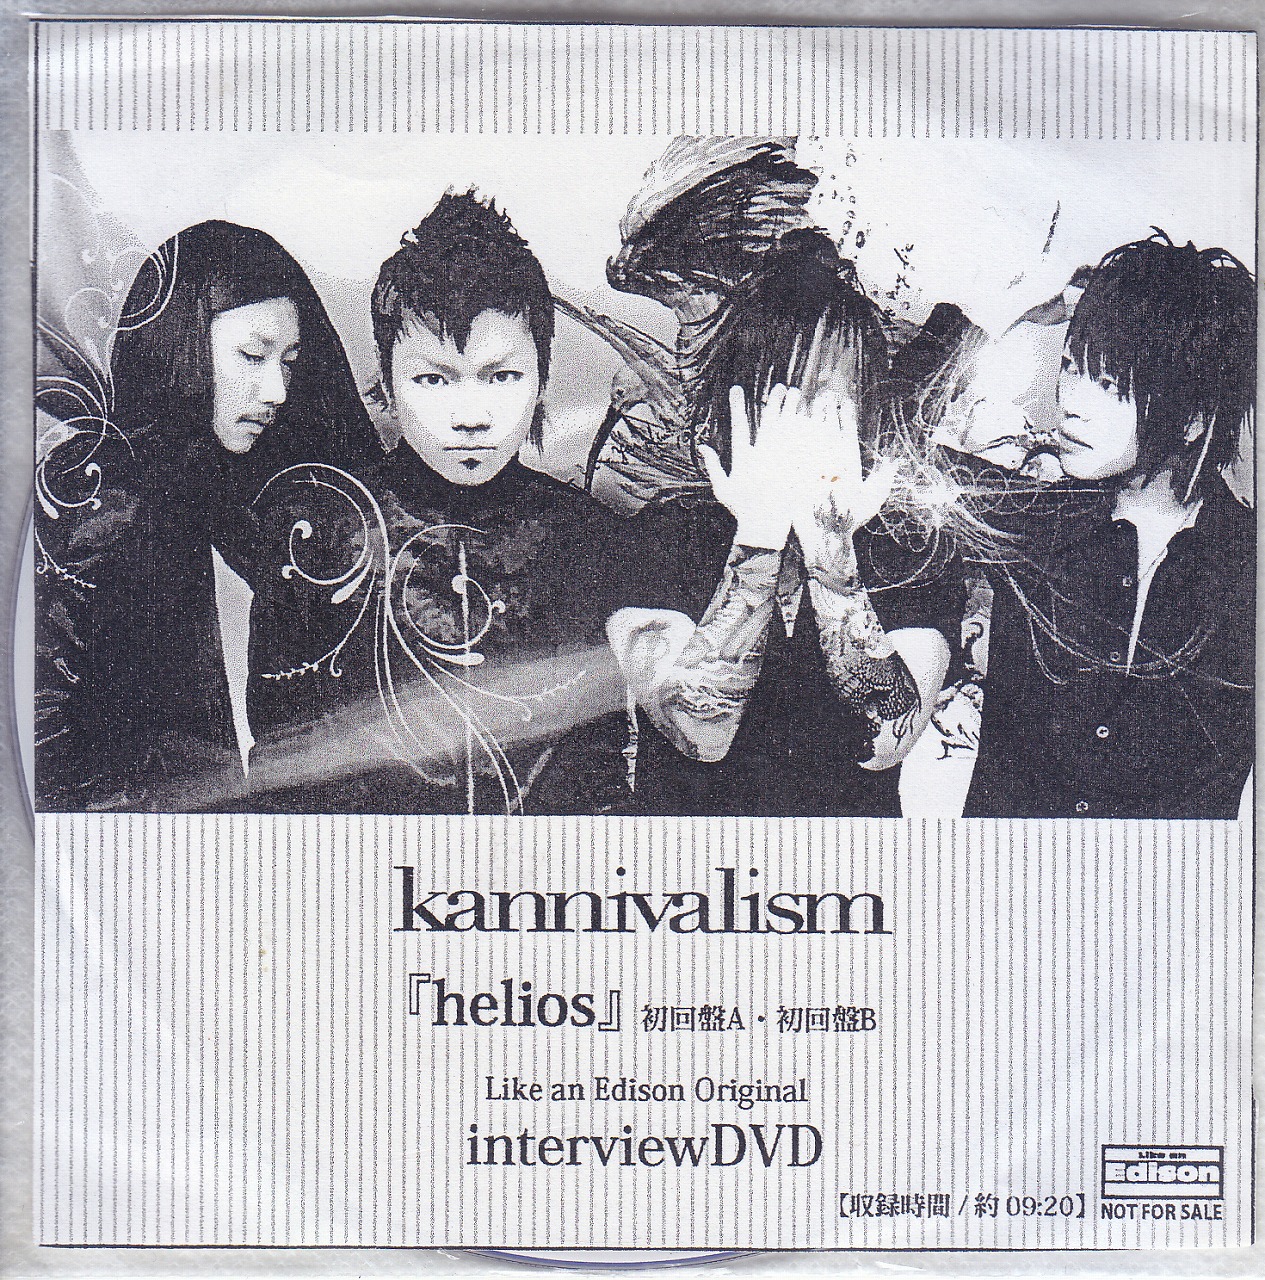 kannivalism ( カニヴァリズム )  の DVD 【LIKE AN EDISON】『helios』初回盤A・初回盤B Like an Edison Original interviewDVD